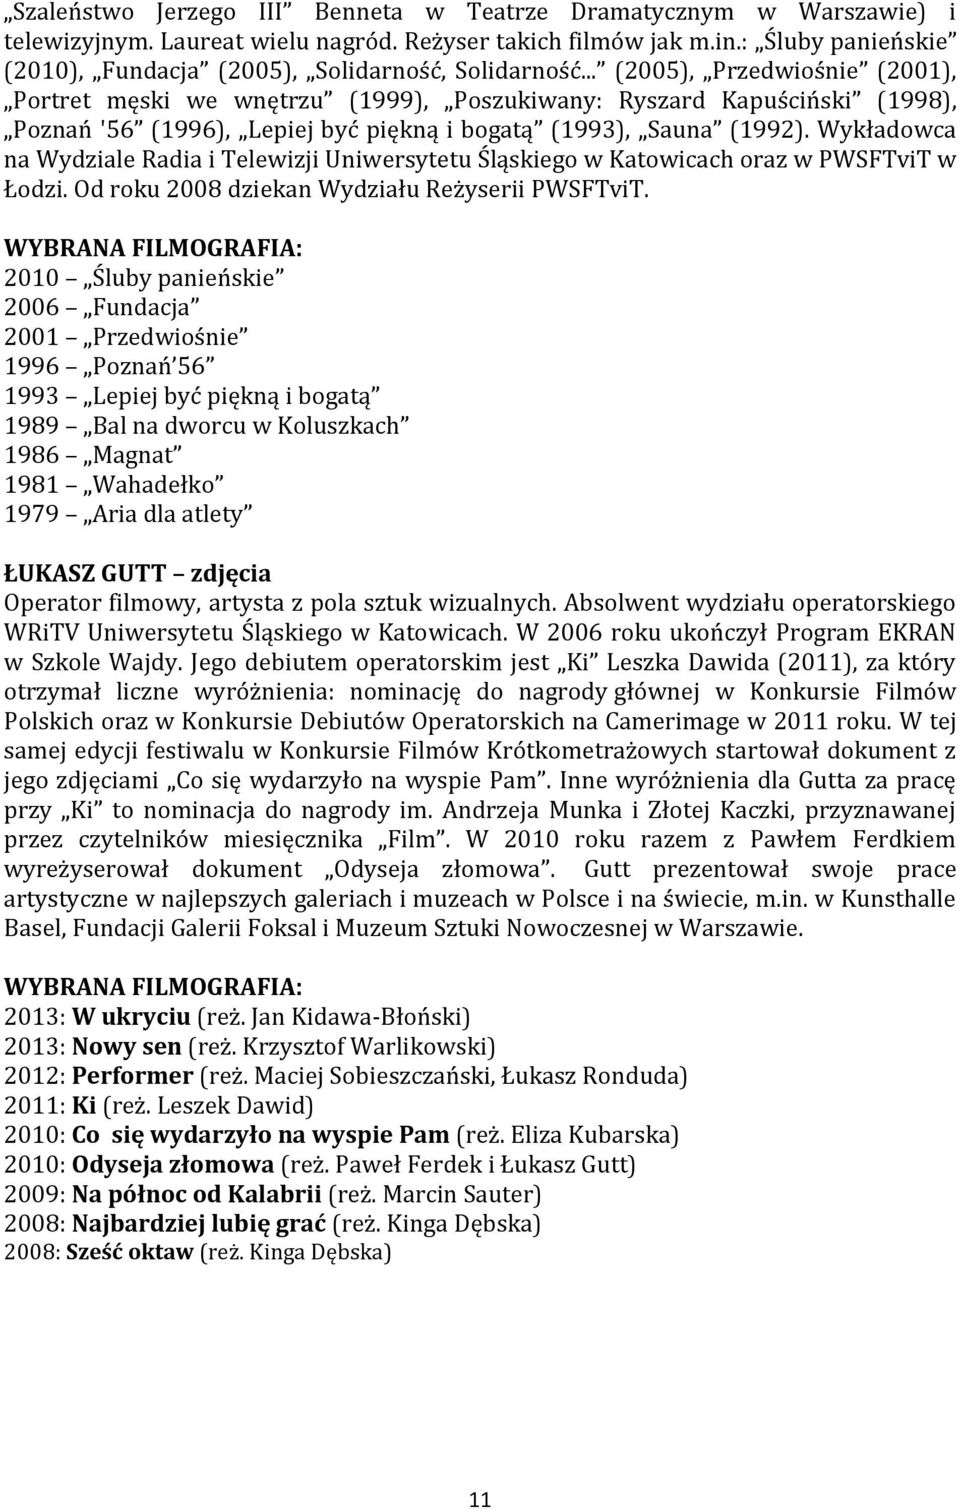 .. (2005), Przedwiośnie (2001), Portret męski we wnętrzu (1999), Poszukiwany: Ryszard Kapuściński (1998), Poznań '56 (1996), Lepiej być piękną i bogatą (1993), Sauna (1992).